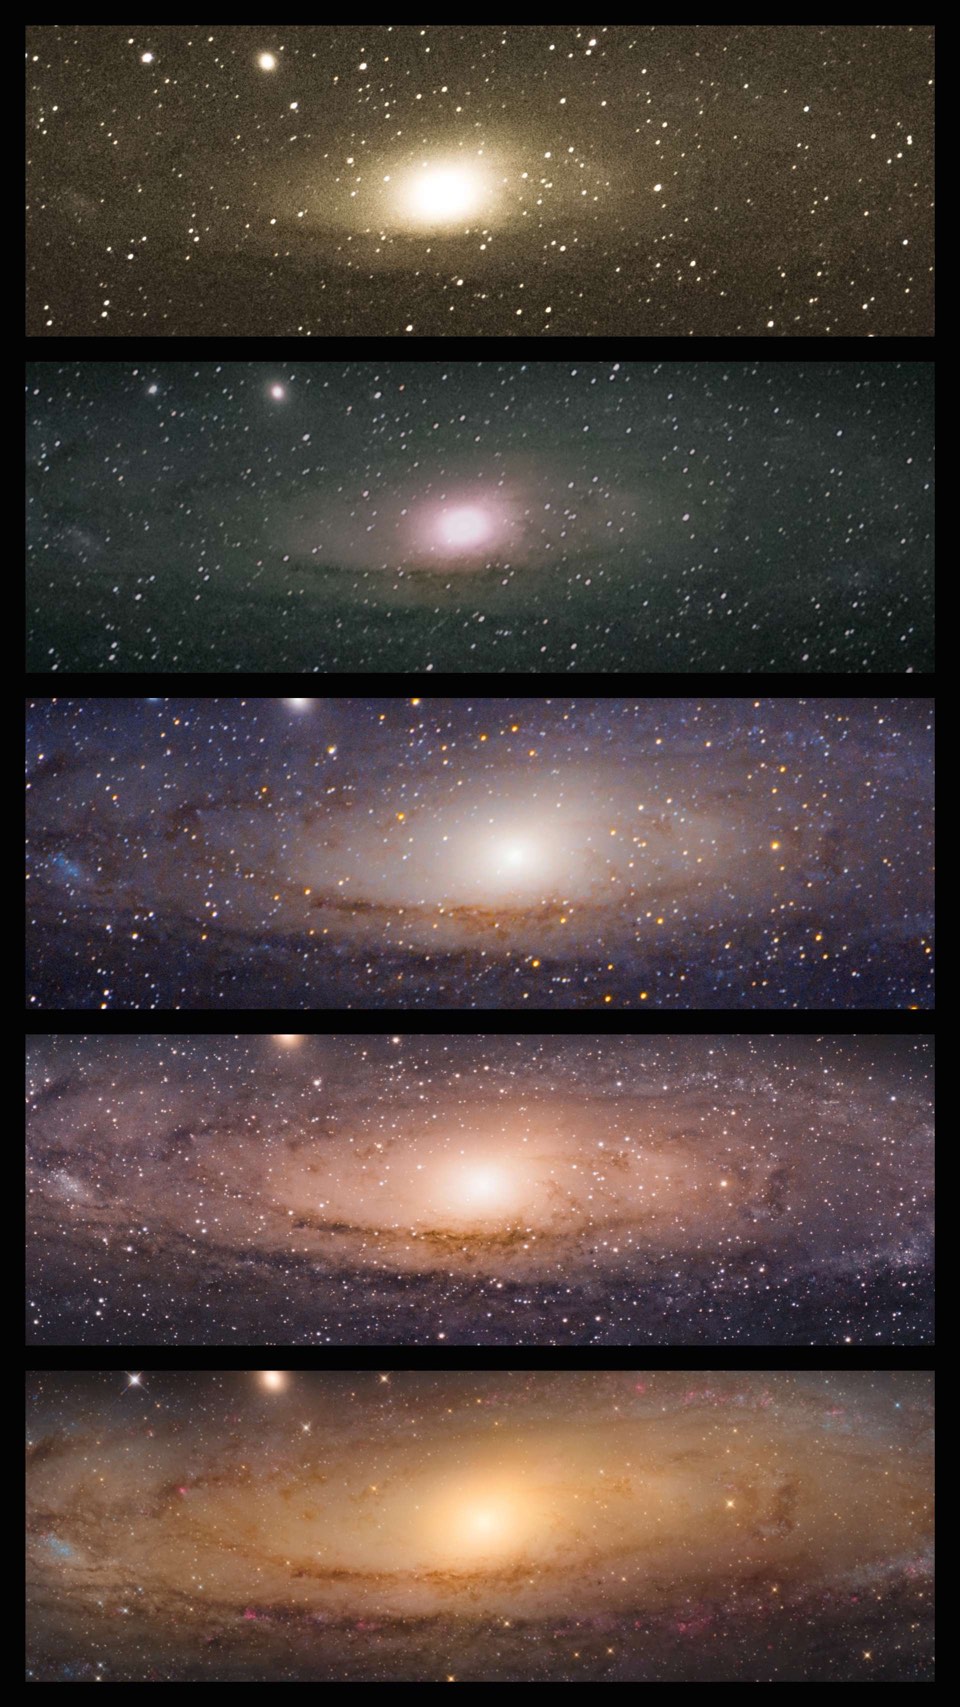 Galaktyka Andromedy, M31, sfotografowana przez Sophie Paulin. 2x bez śledzenia, za pomocą teleobiektywu 200mm, 1x za pomocą montażu fotograficznego i teleobiektywu 200mm z telekonwerterem, 1x za pomocą montażu fotograficznego i teleobiektywu 600mm, 1x za pomocą teleskopu Newtona 8" f/4.5.